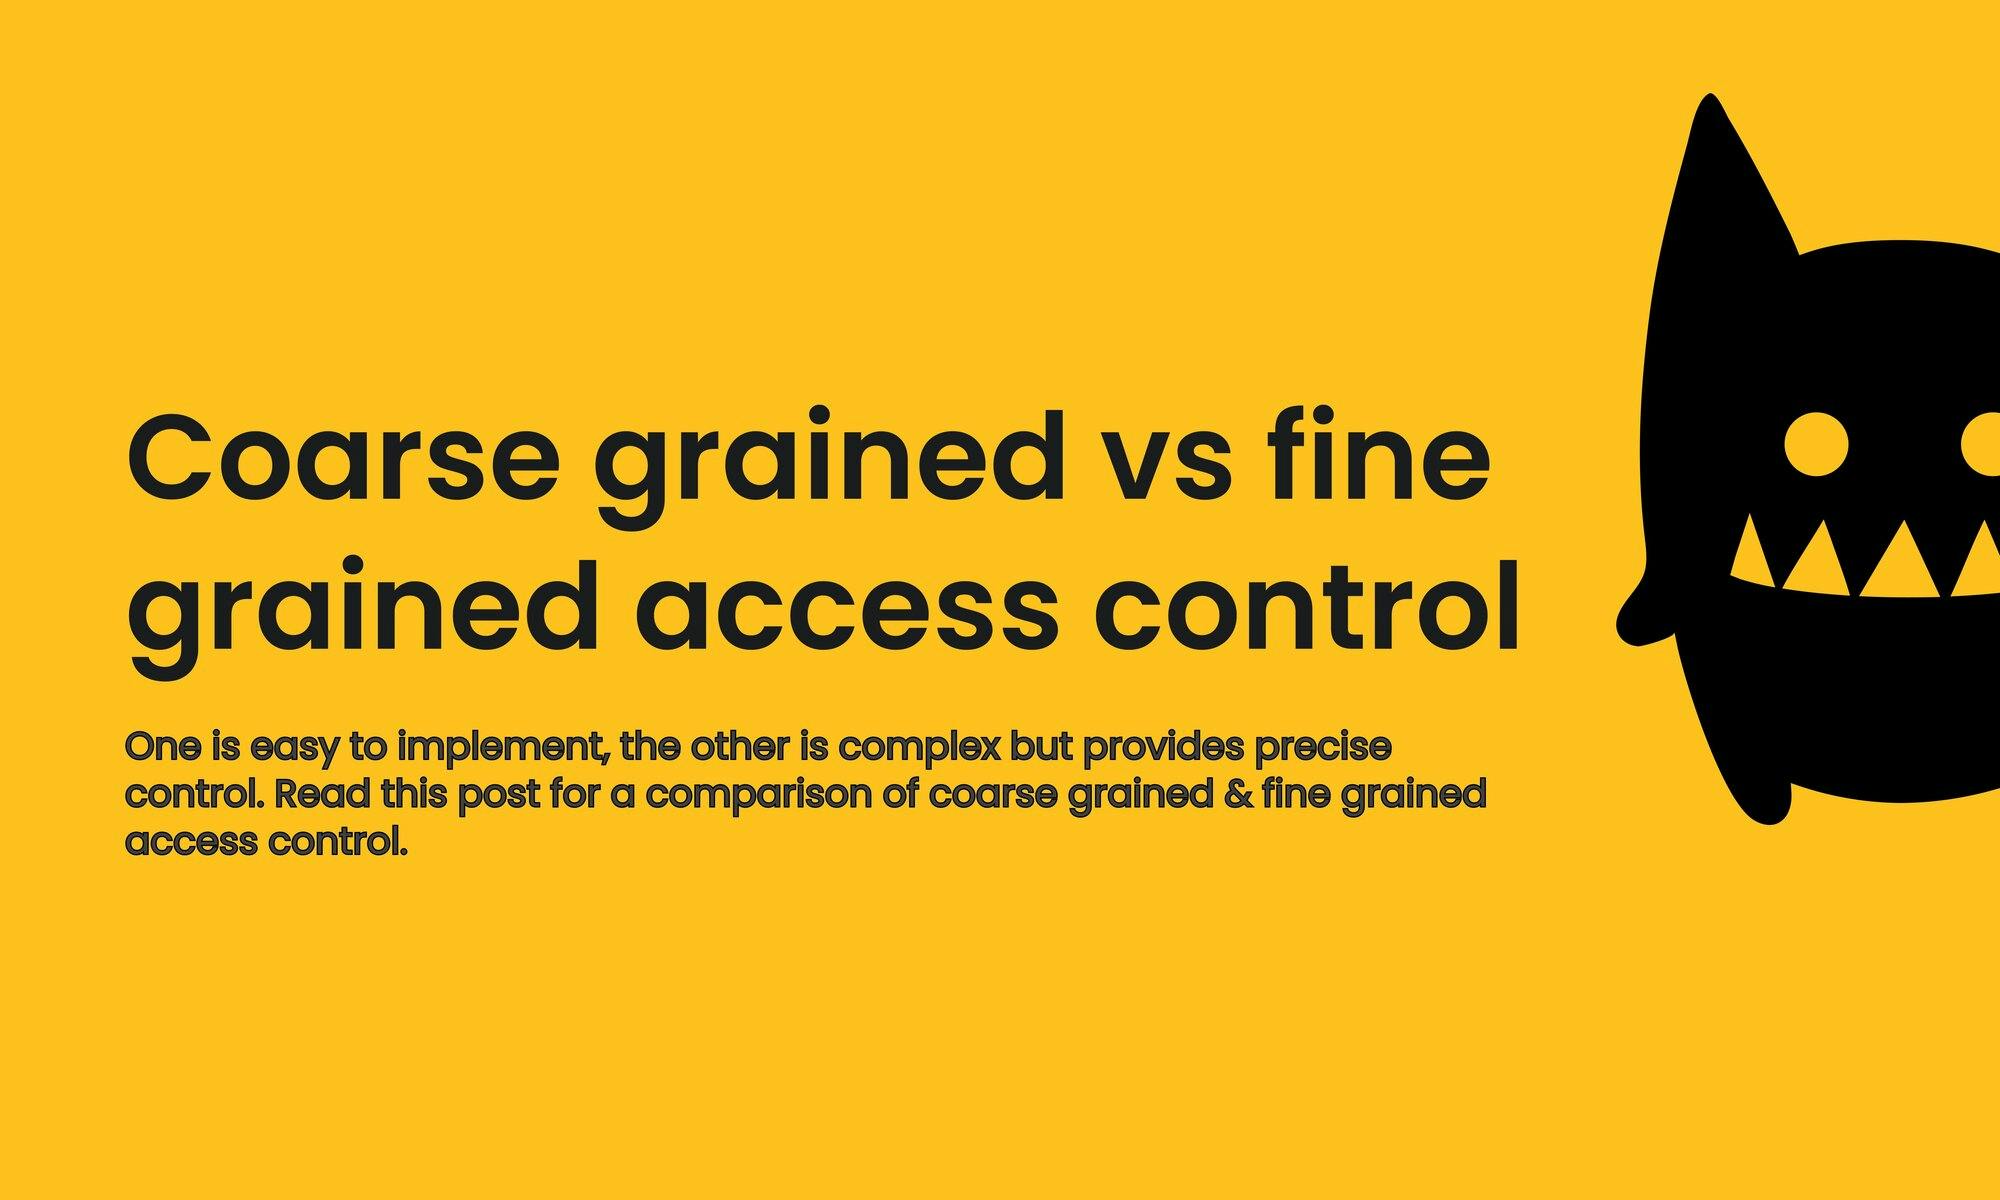 Coarse grained vs fine grained access control